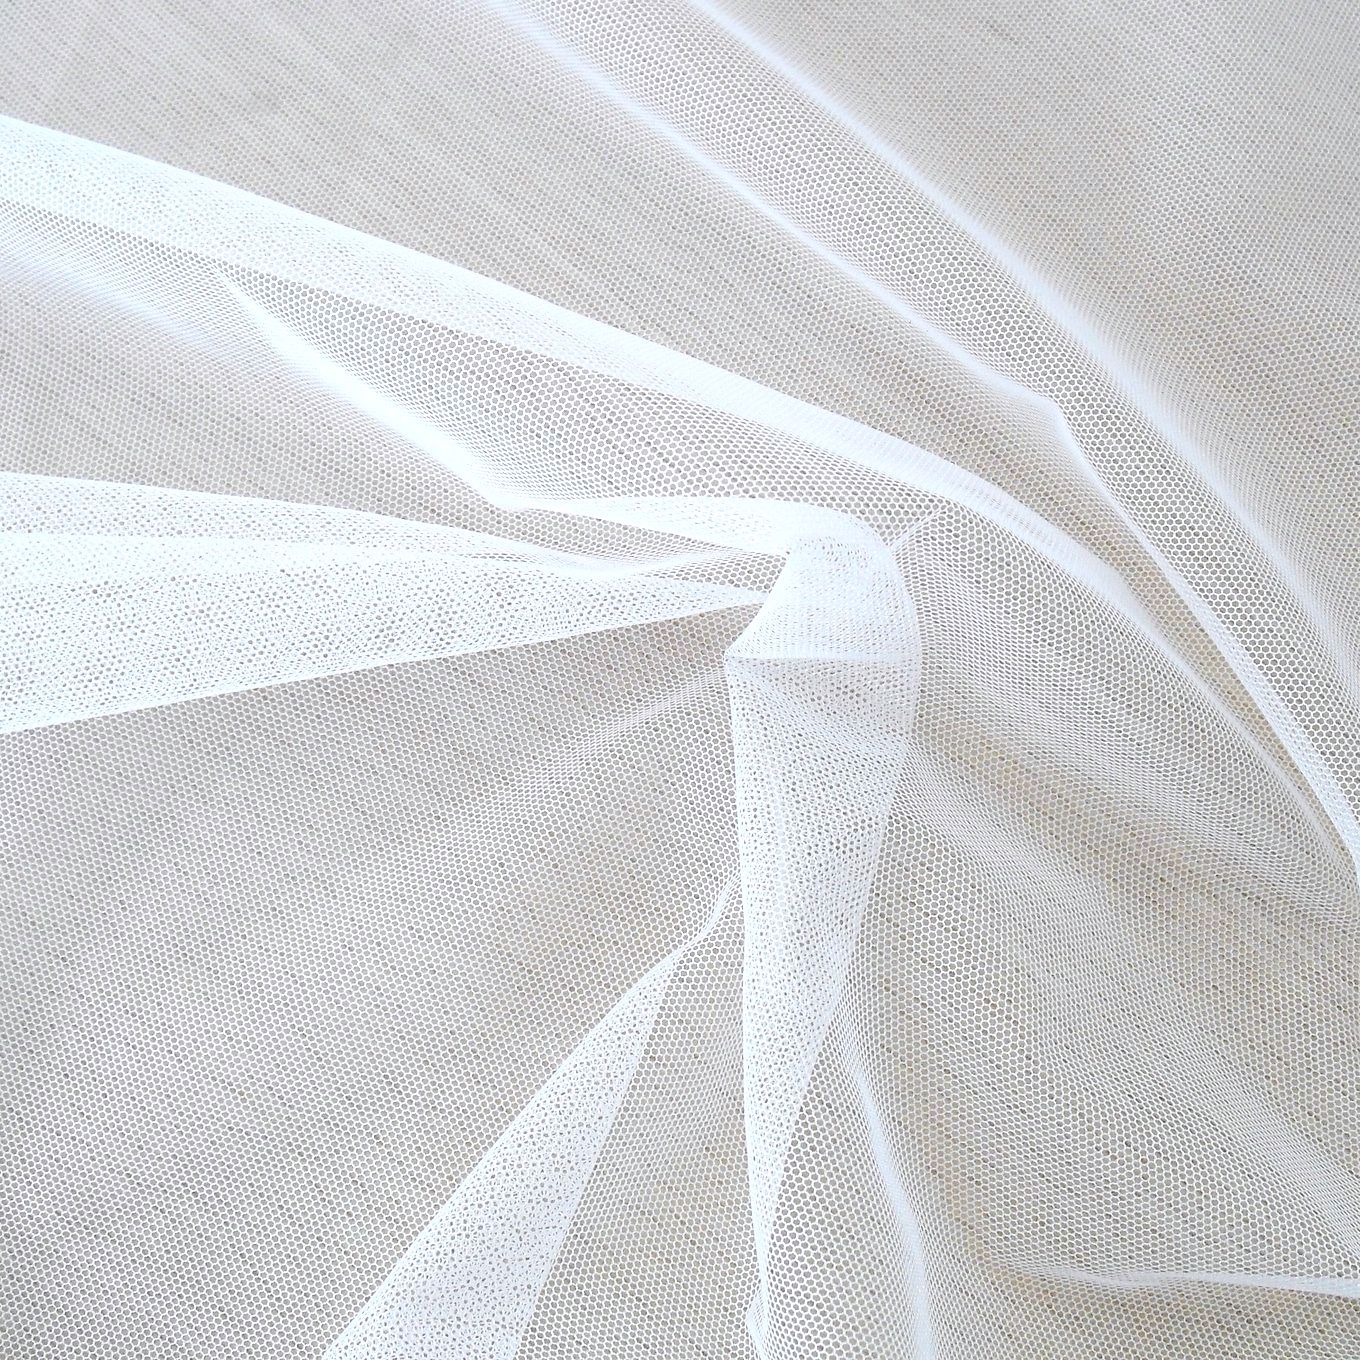 uni Tüllstoff Meterware 300cm breit für Gardine Vorhang Store Hochzeit - weiß